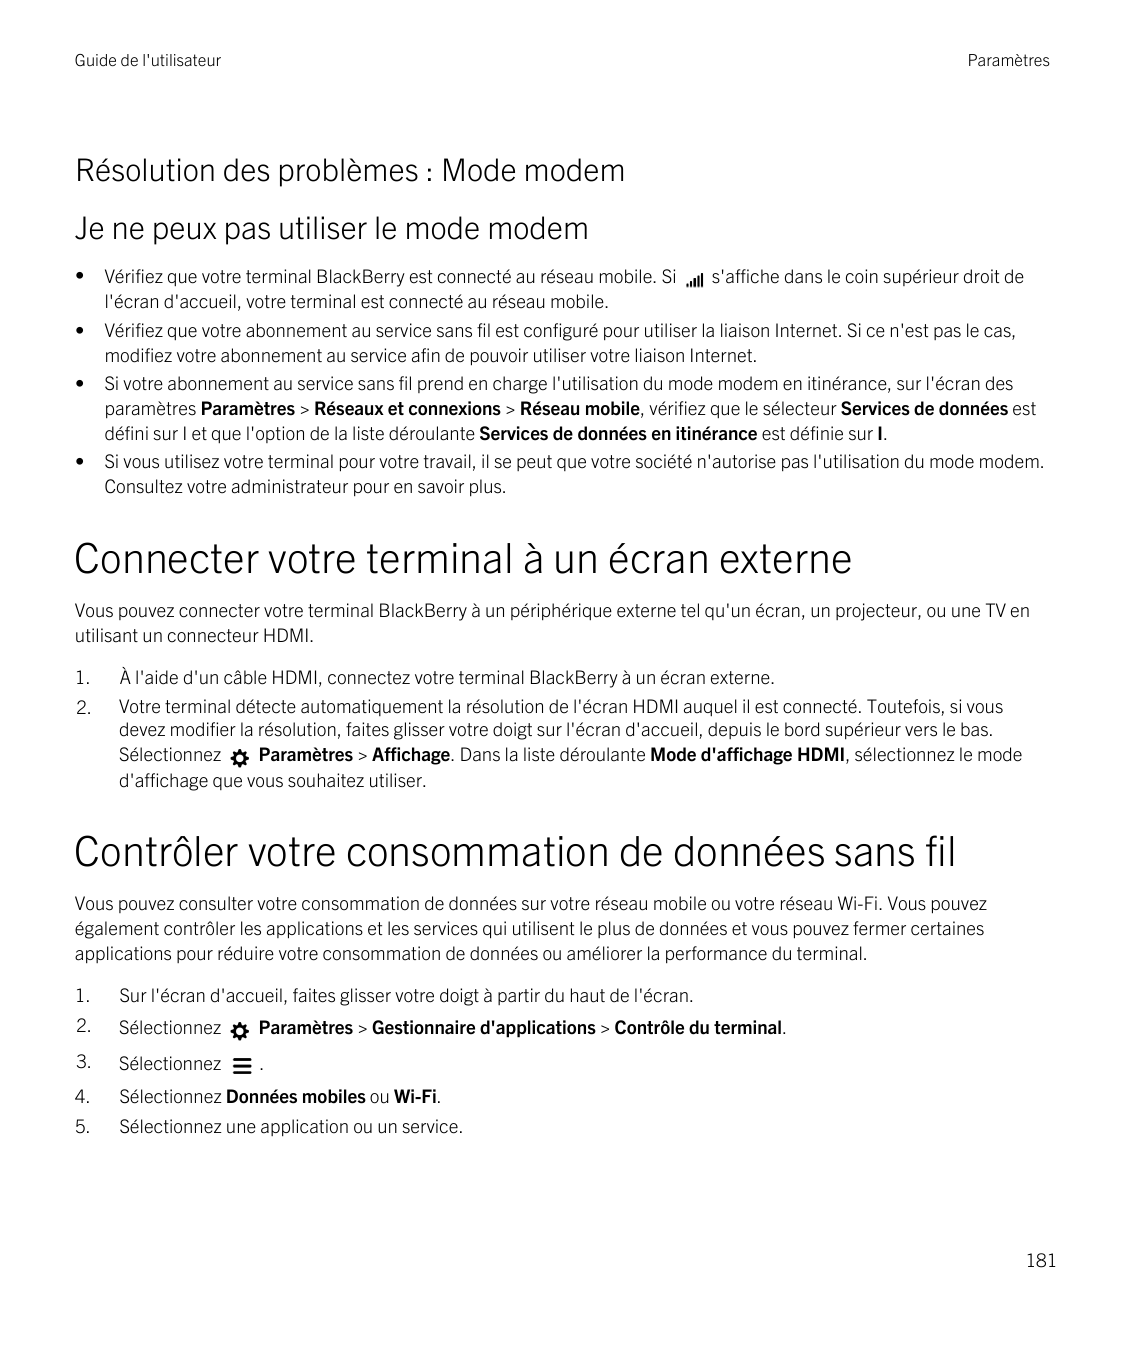 Guide de l'utilisateurParamètresRésolution des problèmes : Mode modemJe ne peux pas utiliser le mode modem••••Vérifiez que votre